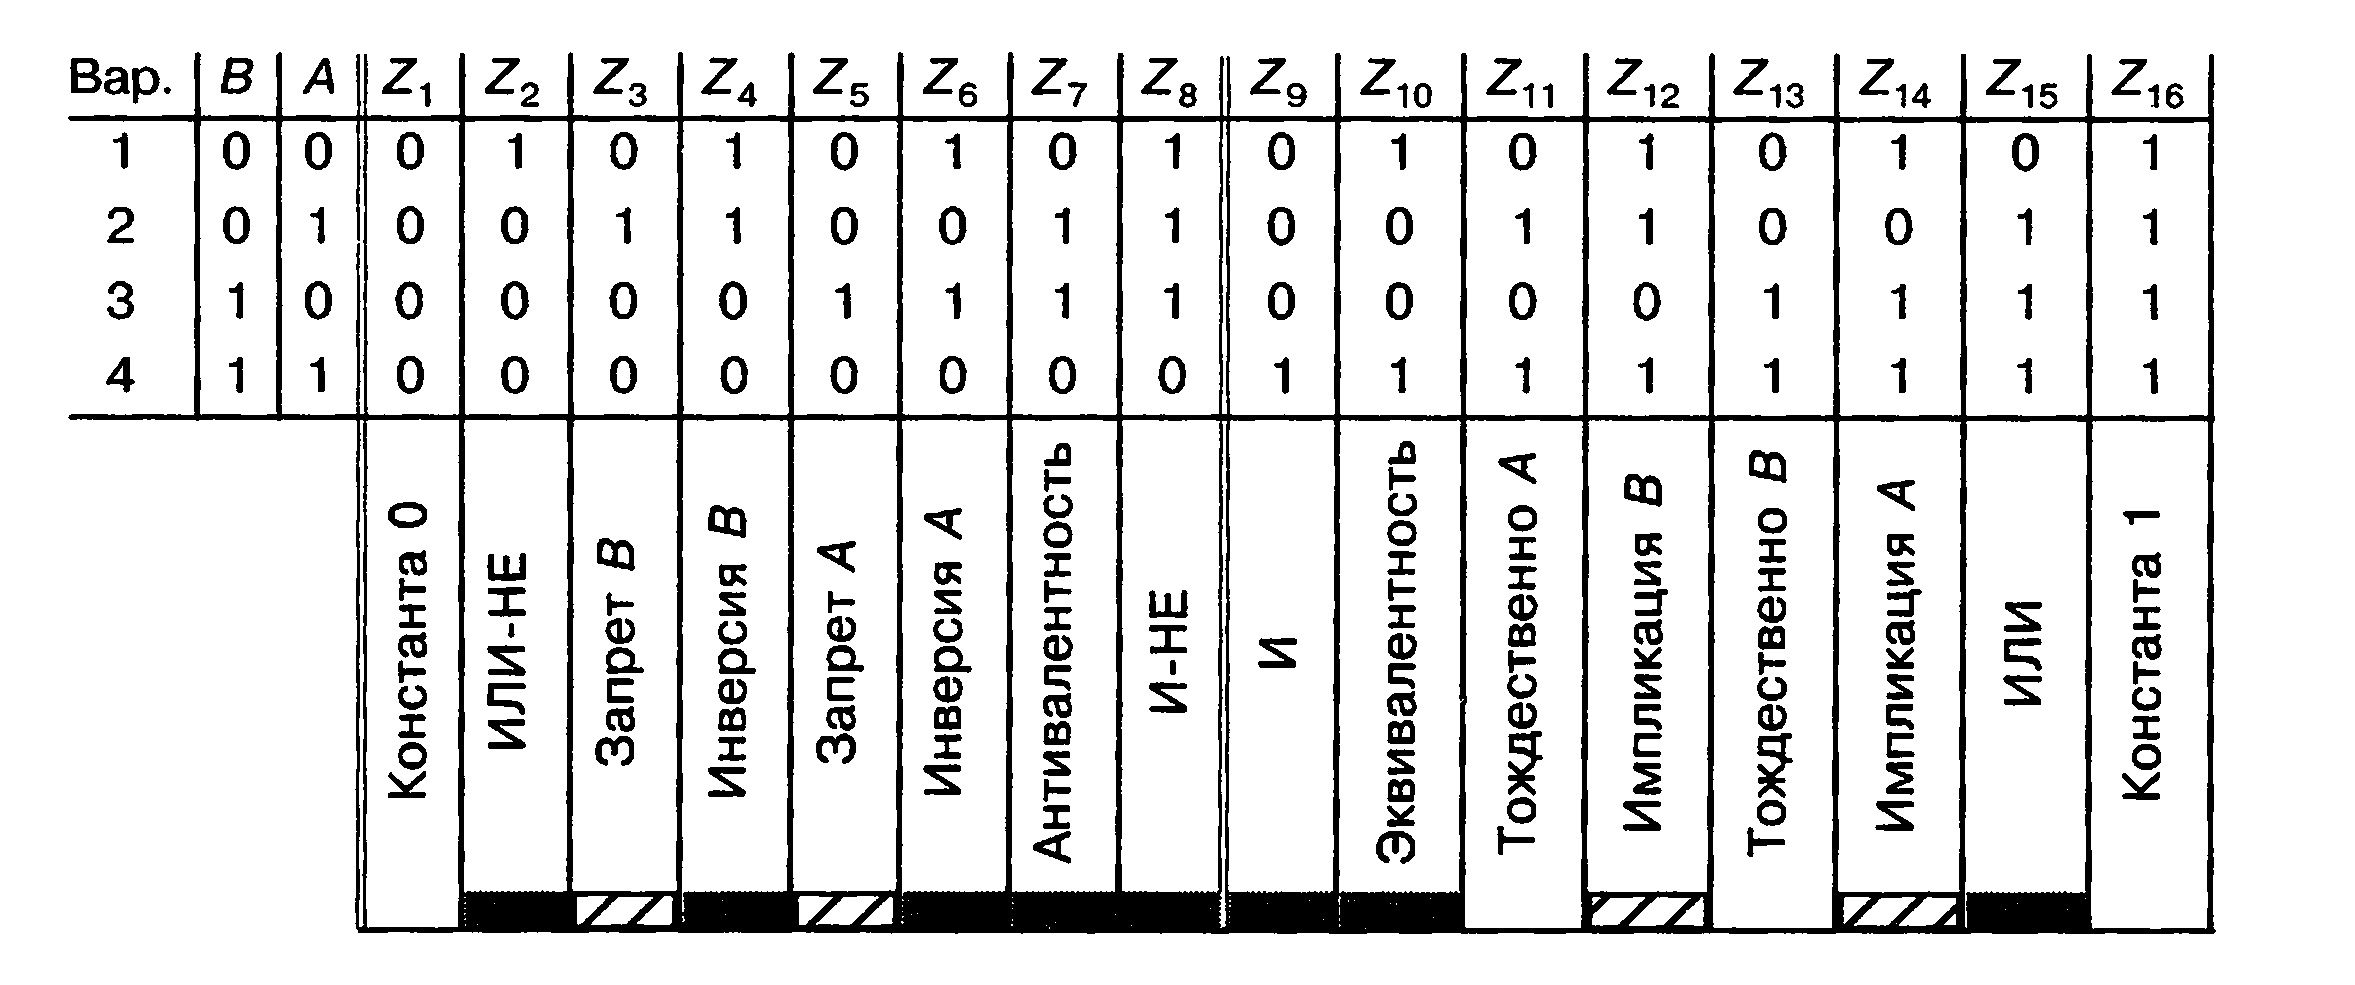 Общая таблица для 16 возможных состояний выходов элементов с двумя входами